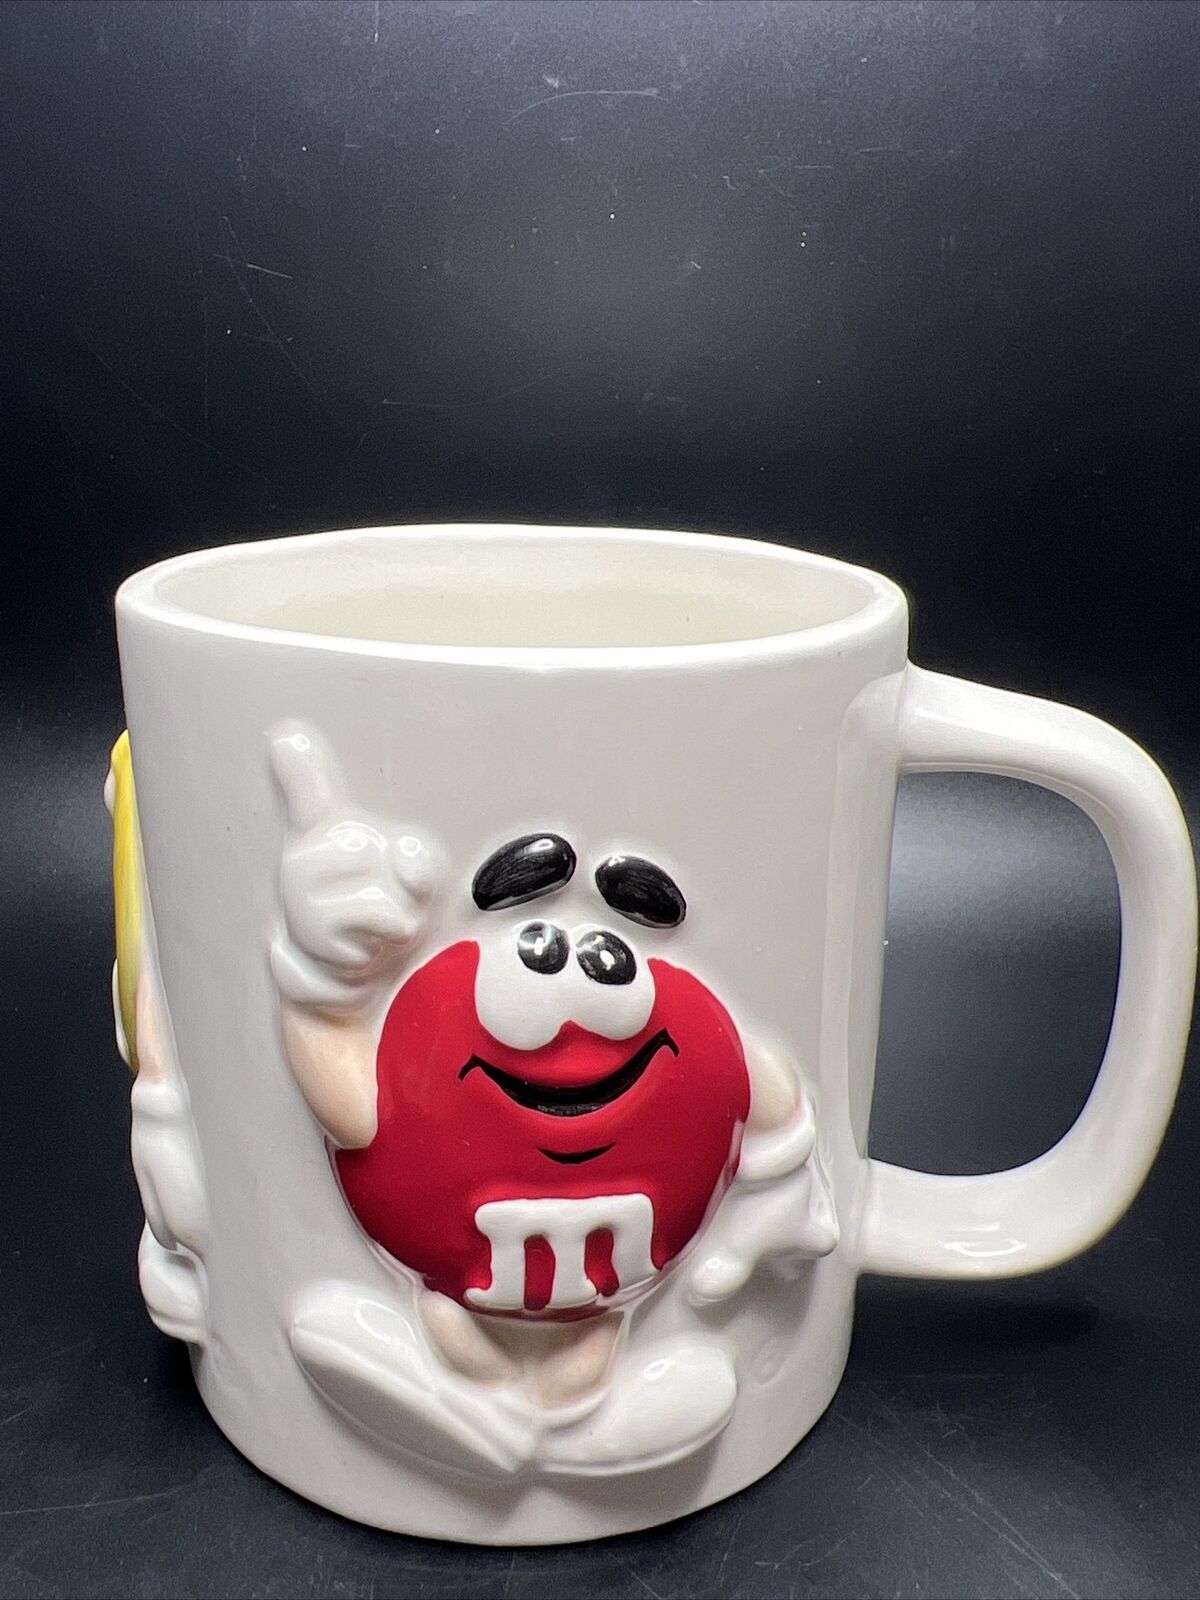 Mars: M & M Coffee Mug - 3D Embossed New